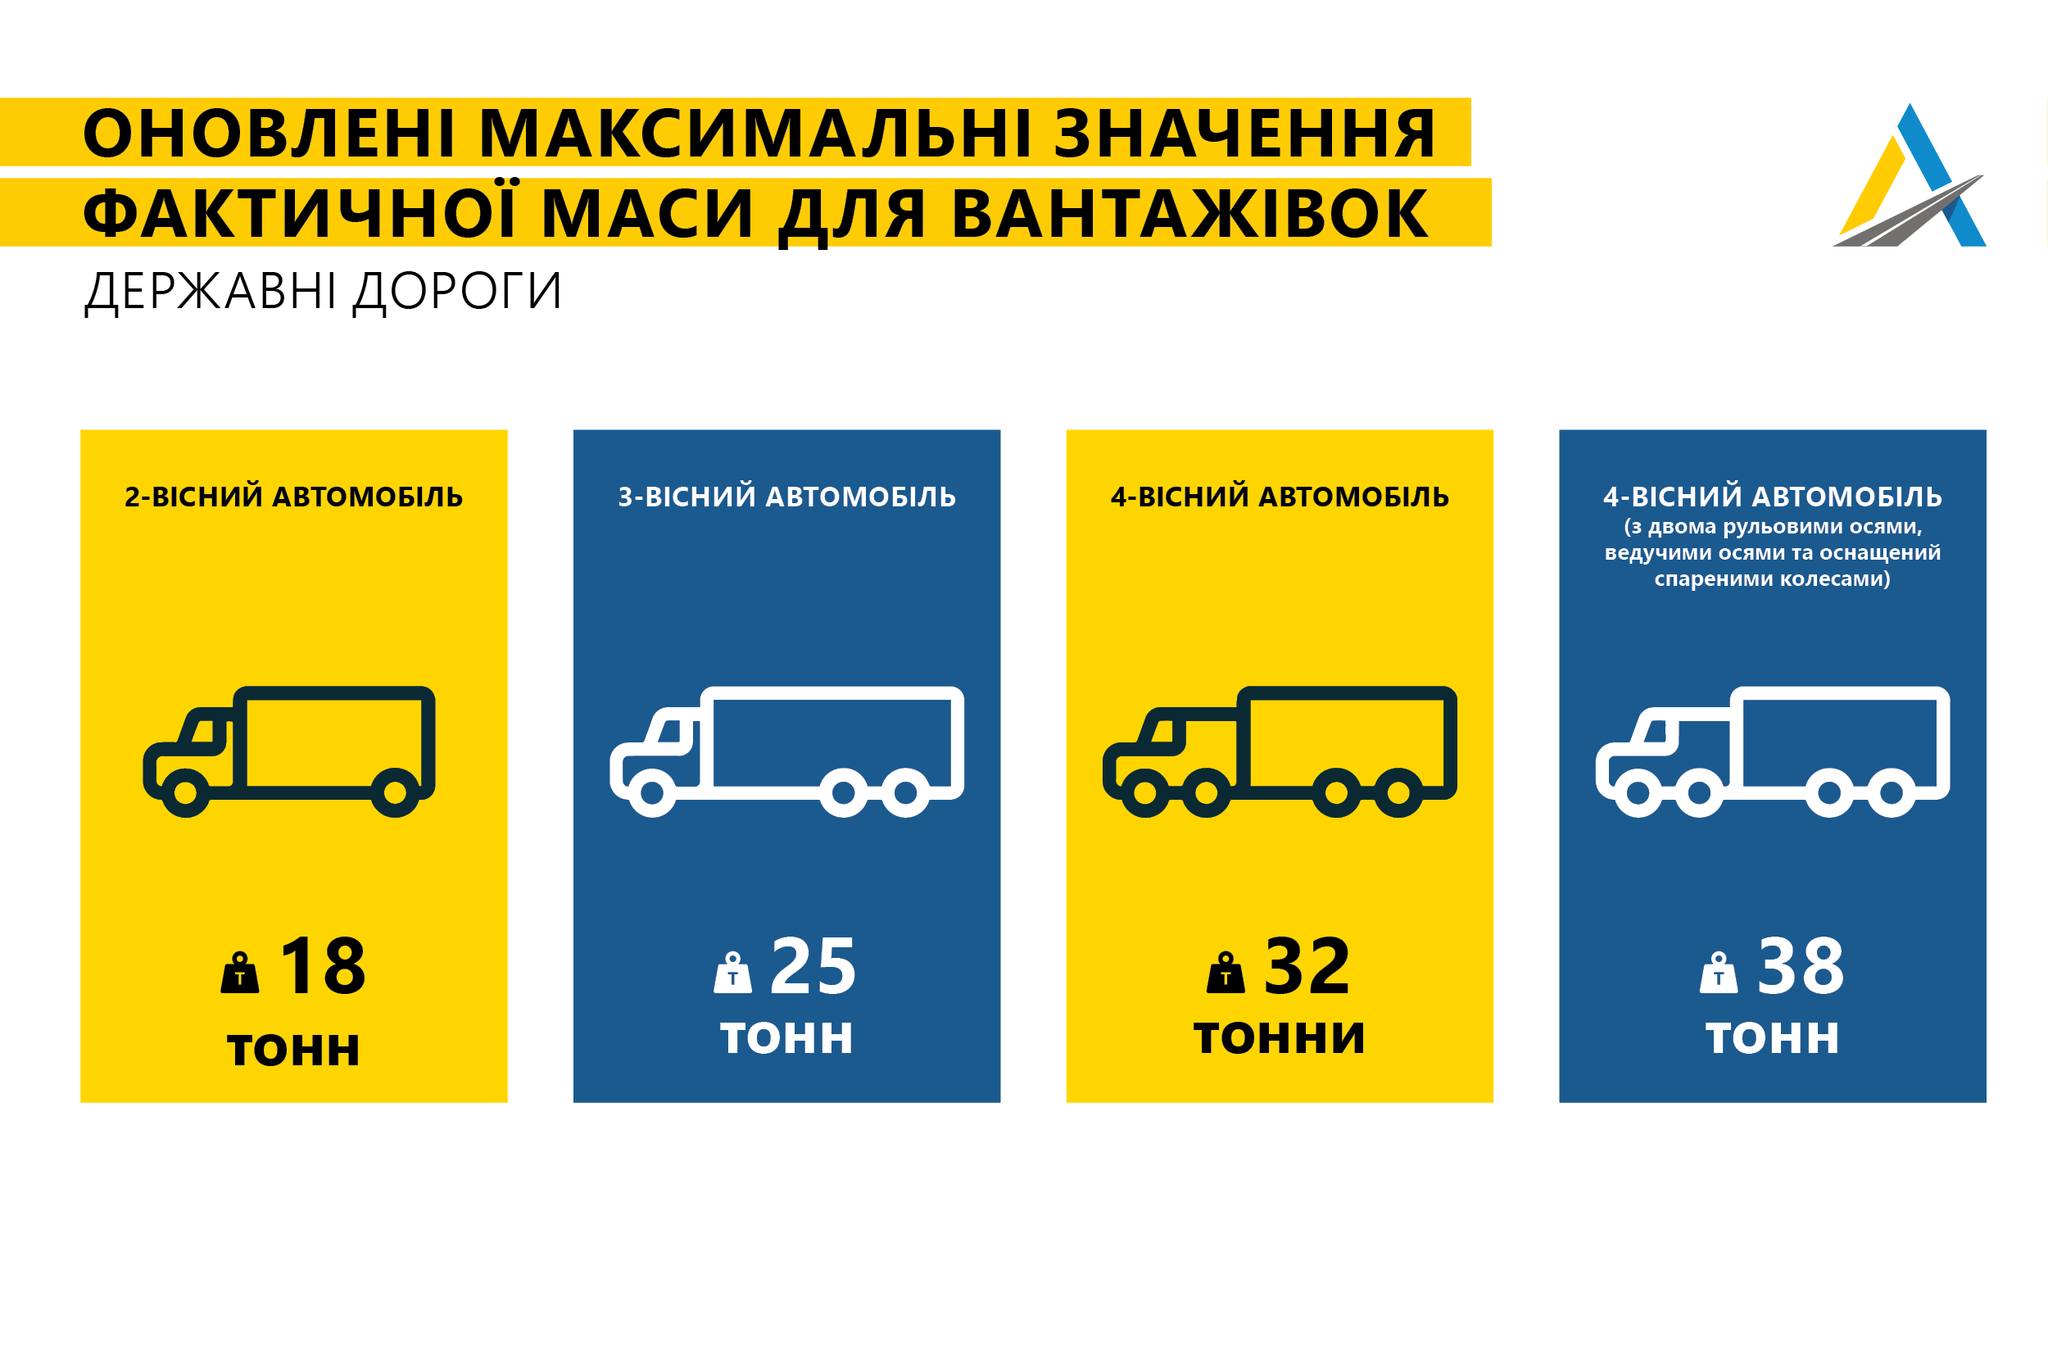 В Запорожской области введут новые ограничения для проезда фур: подробности (ФОТО)